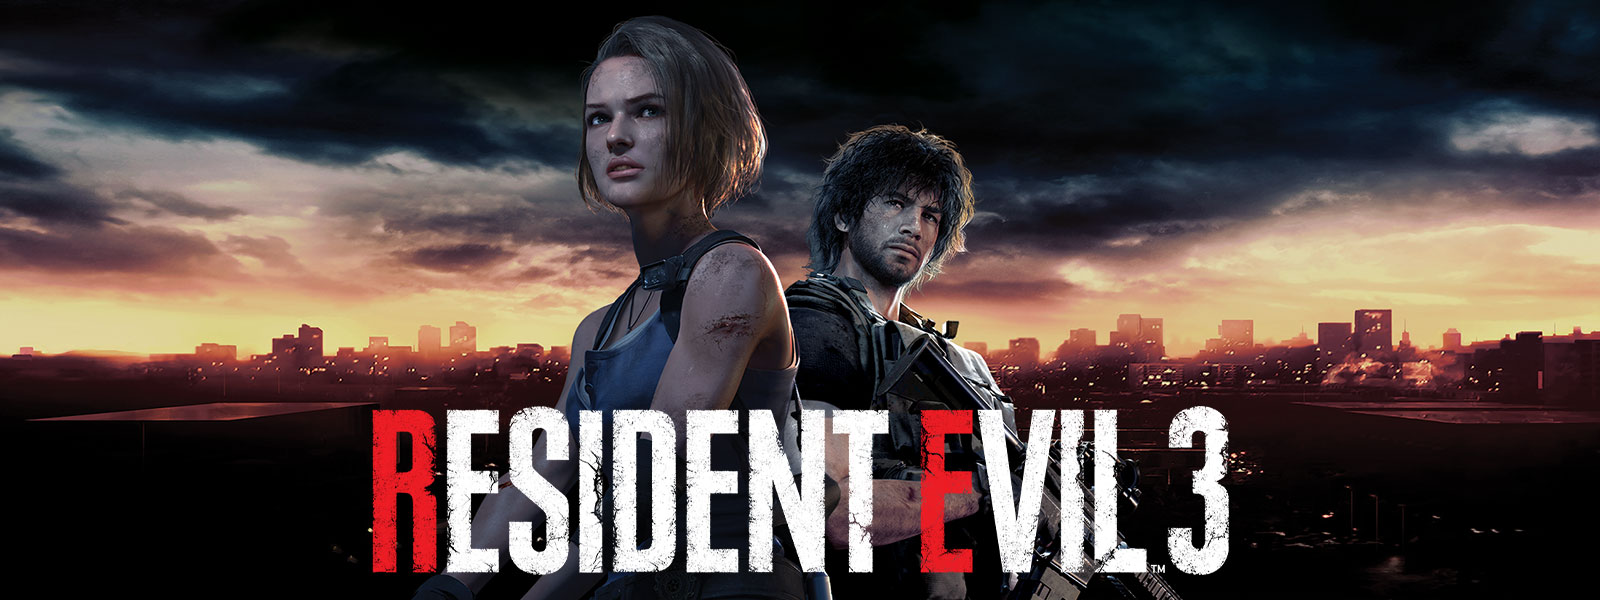 Resident Evil 3, Jill Valentine et Carlos Oliveira sont debout avec les gratte-ciels de Raccoon City derrière eux